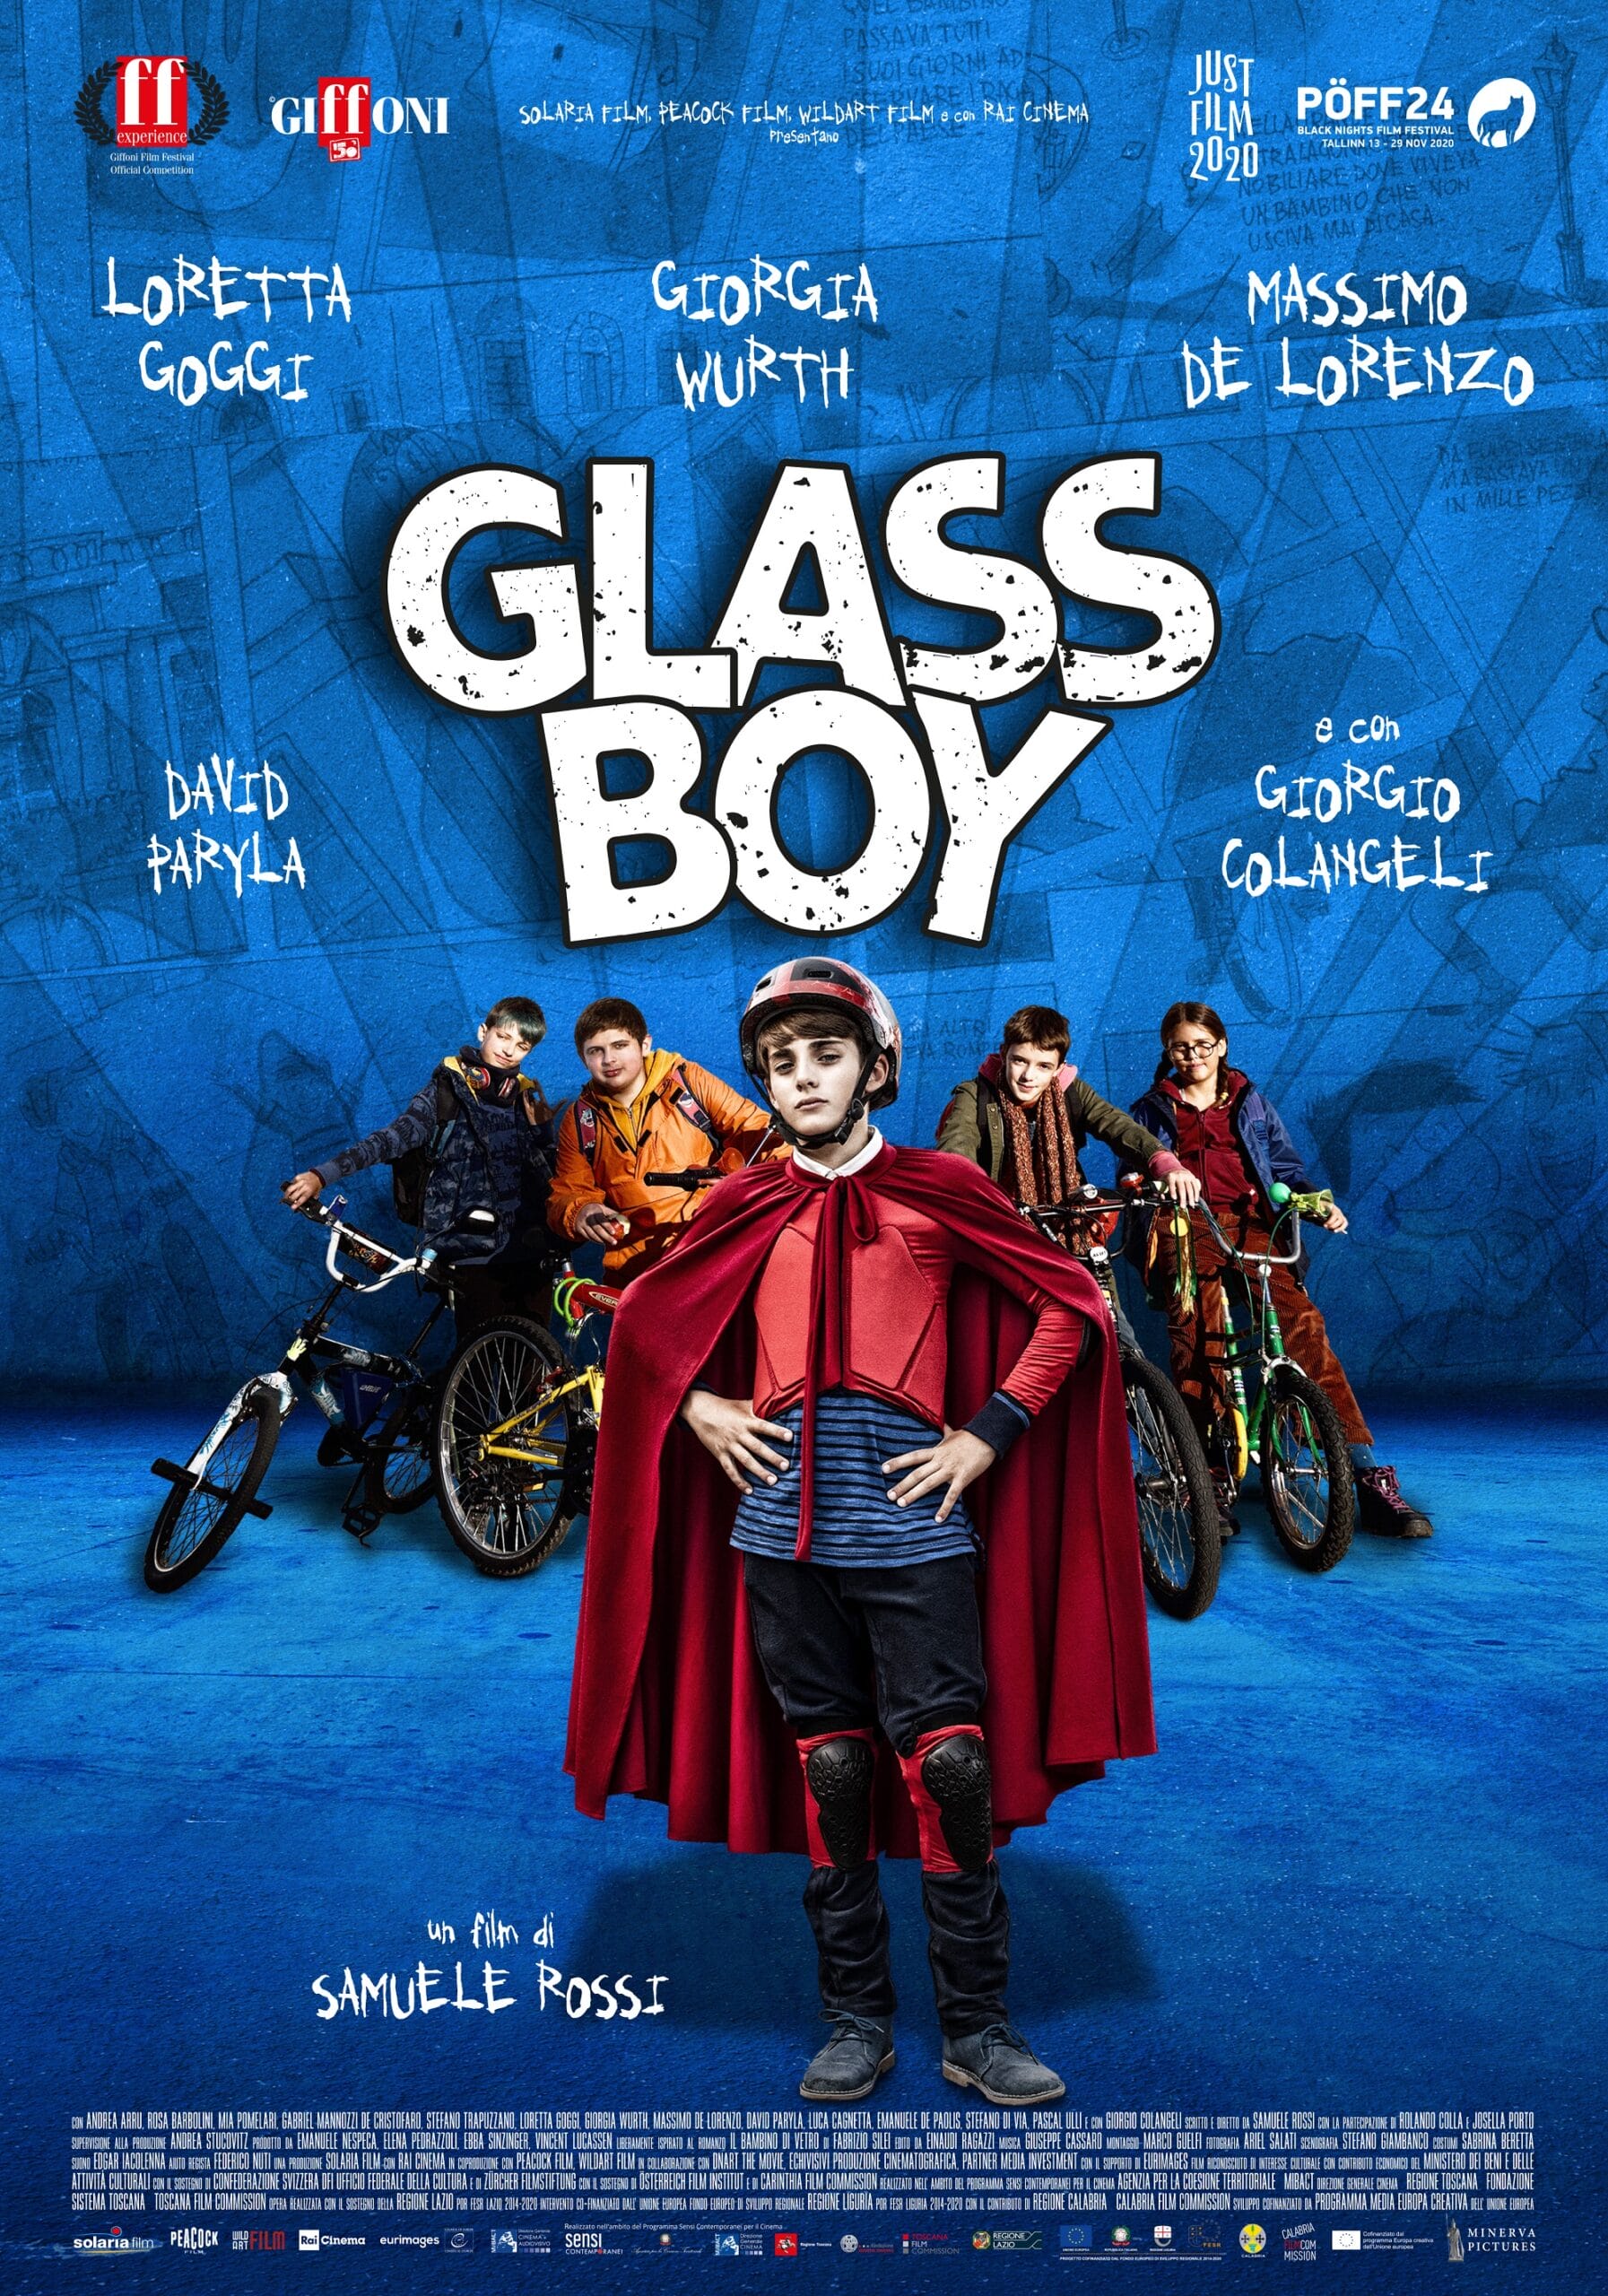 Glassboy, in Toscana il film sarà disponibile da domenica 31 gennaio